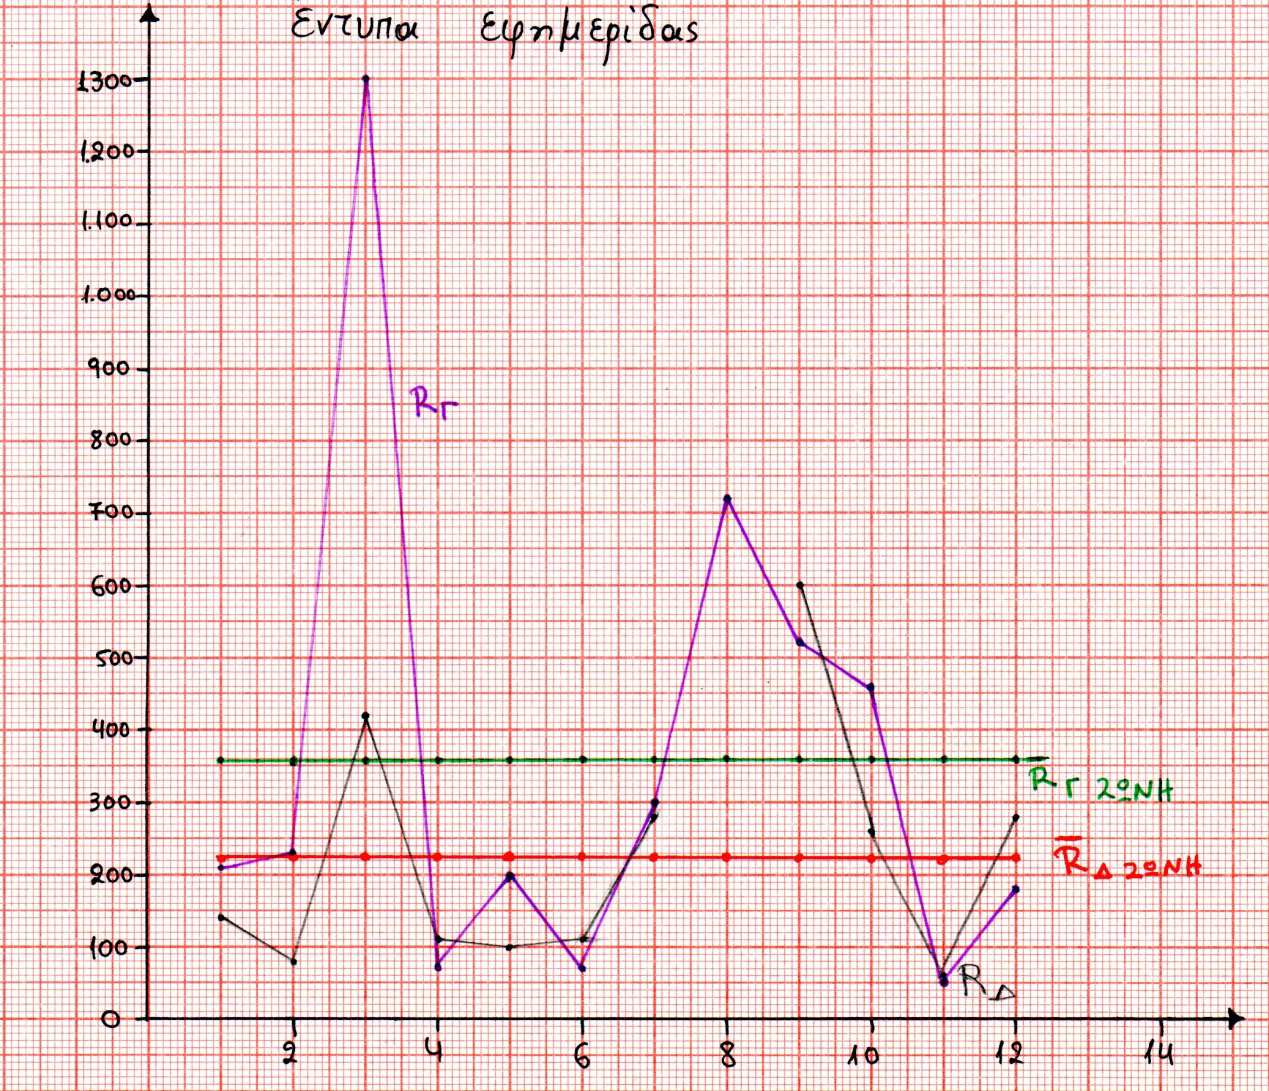 Και στα δύο διαγράµµατα παρατηρείται ανοδική τάση τιµών. Ιδιαίτερα στο διάστηµα της τρίτης και ένατης εβδοµάδας (23/09,14/10) για Γ και ζώνη αντίστοιχα παρατηρούνται σηµεία alarm.